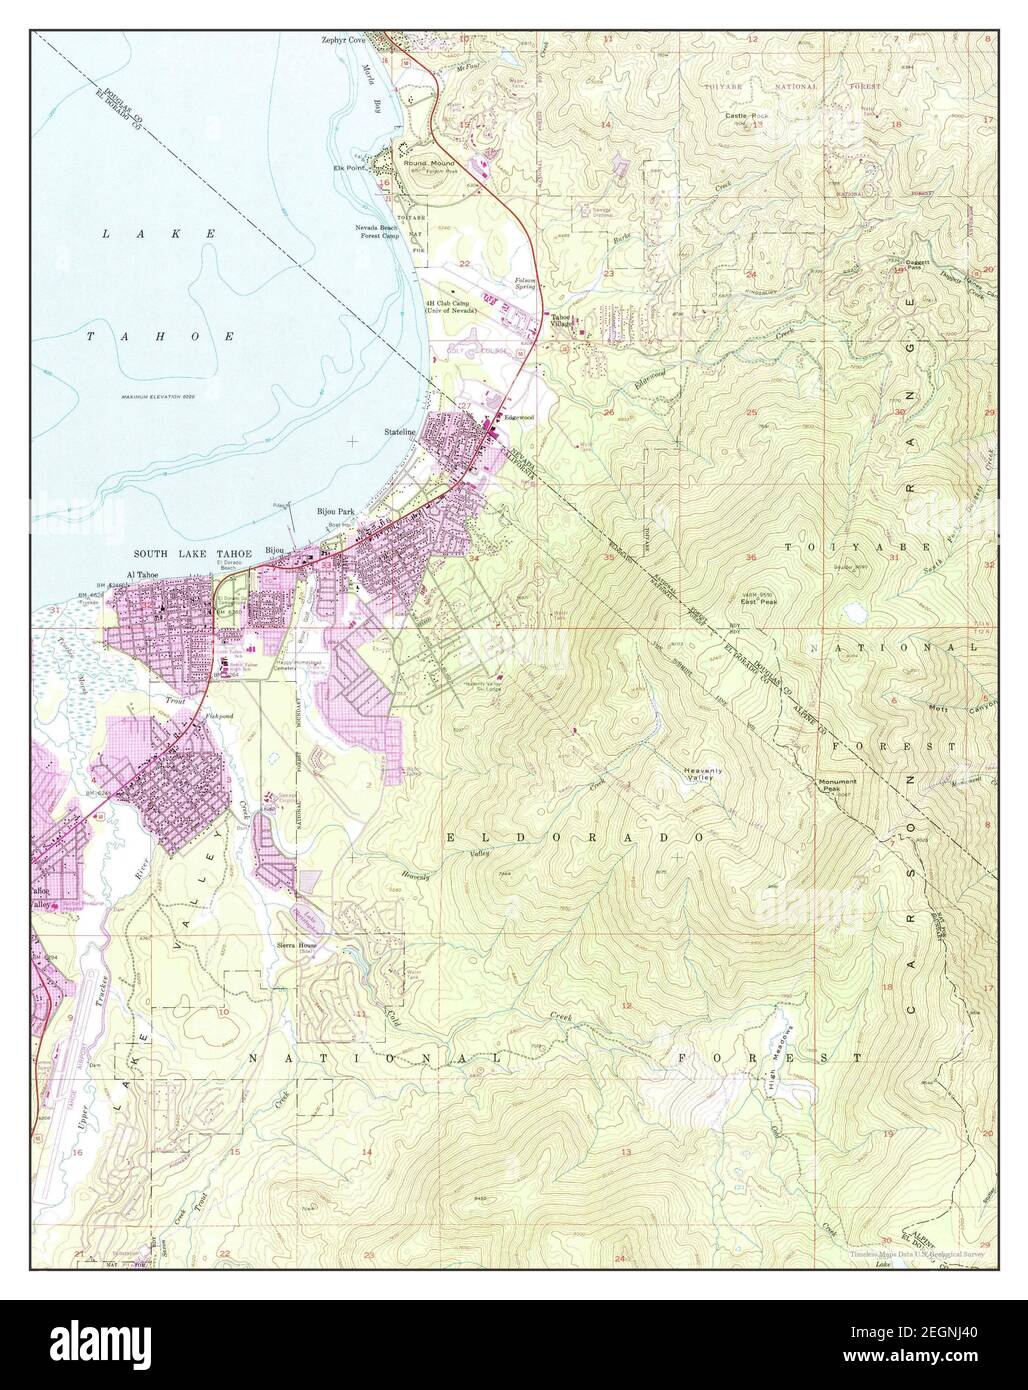 South Lake Tahoe, Californie, carte 1955, 1:24000, États-Unis d'Amérique par Timeless Maps, données U.S. Geological Survey Banque D'Images